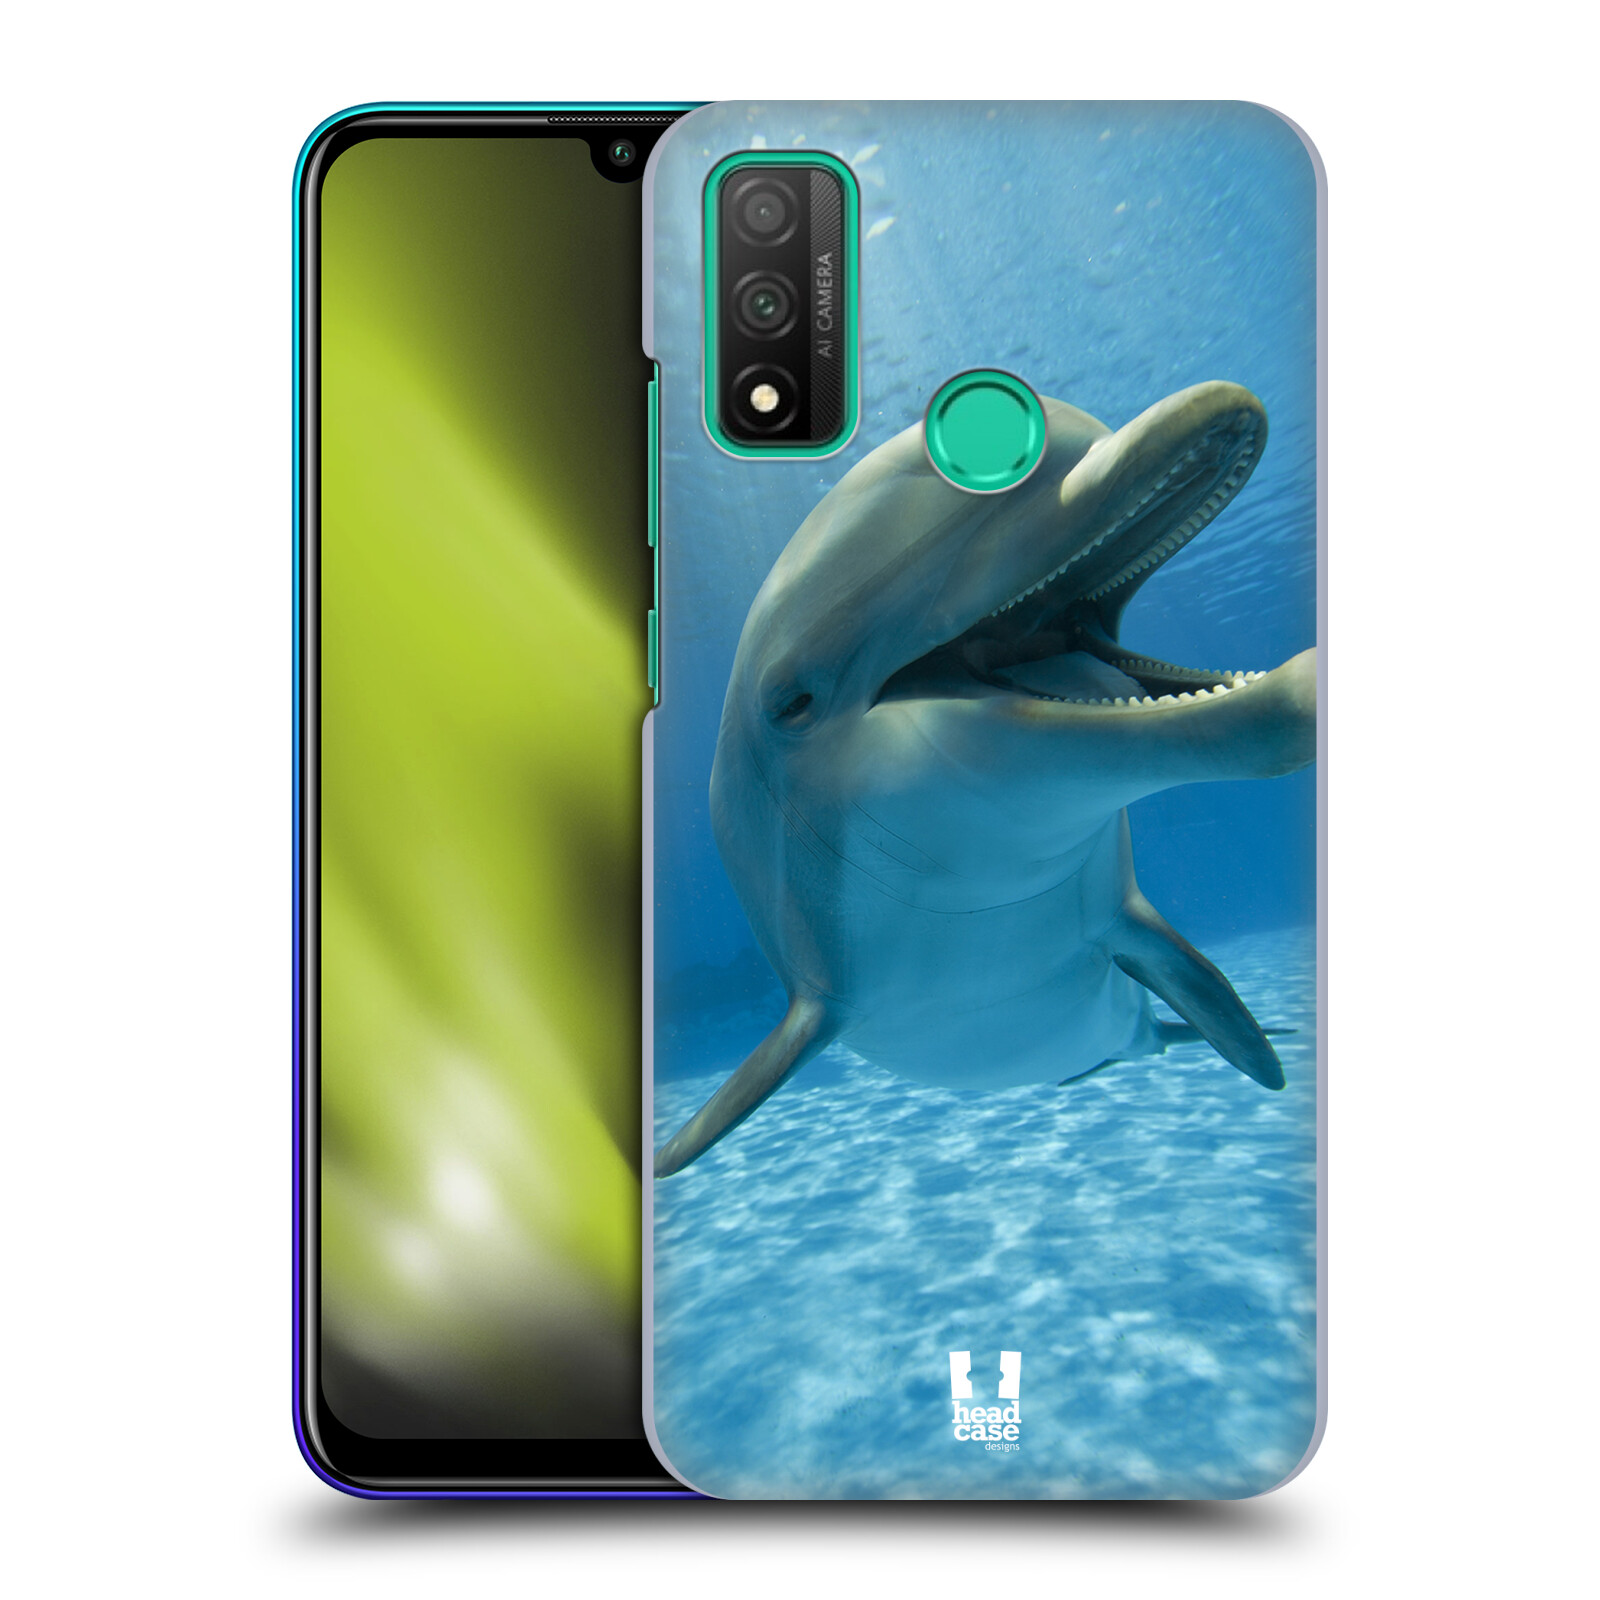 Zadní obal pro mobil Huawei P SMART 2020 - HEAD CASE - Svět zvířat delfín v moři